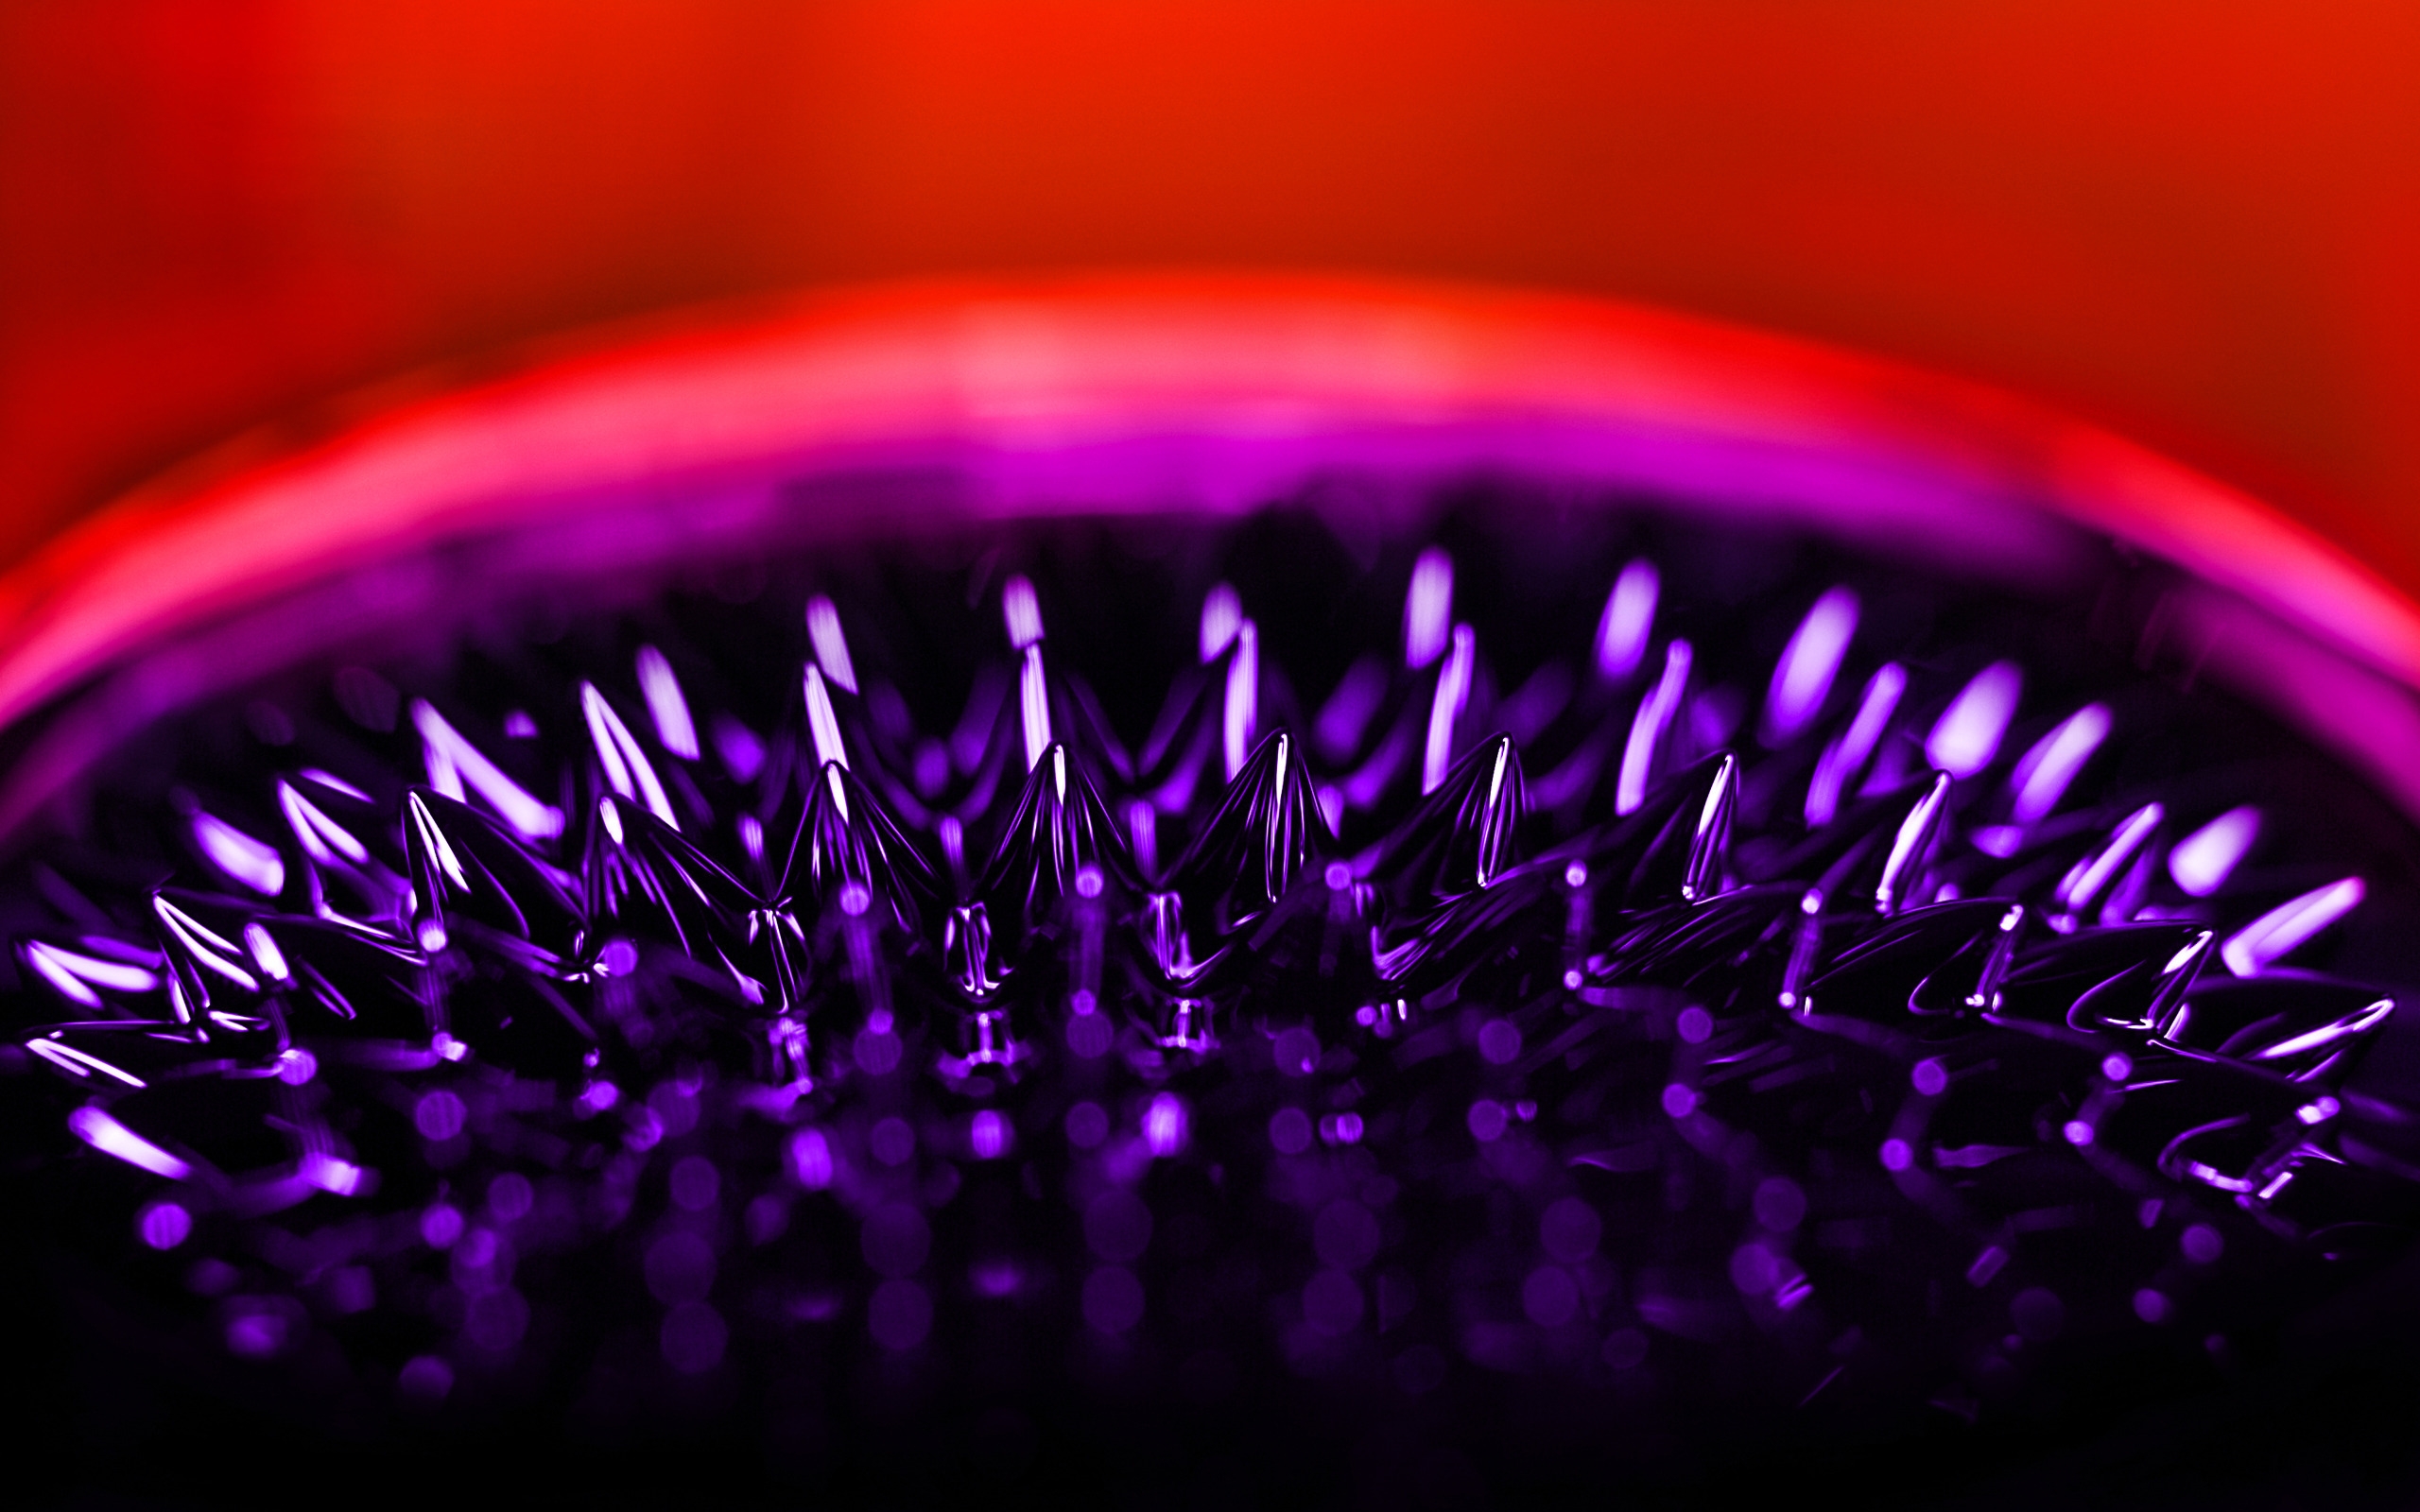 Ferrofluid for 2560 x 1600 widescreen resolution